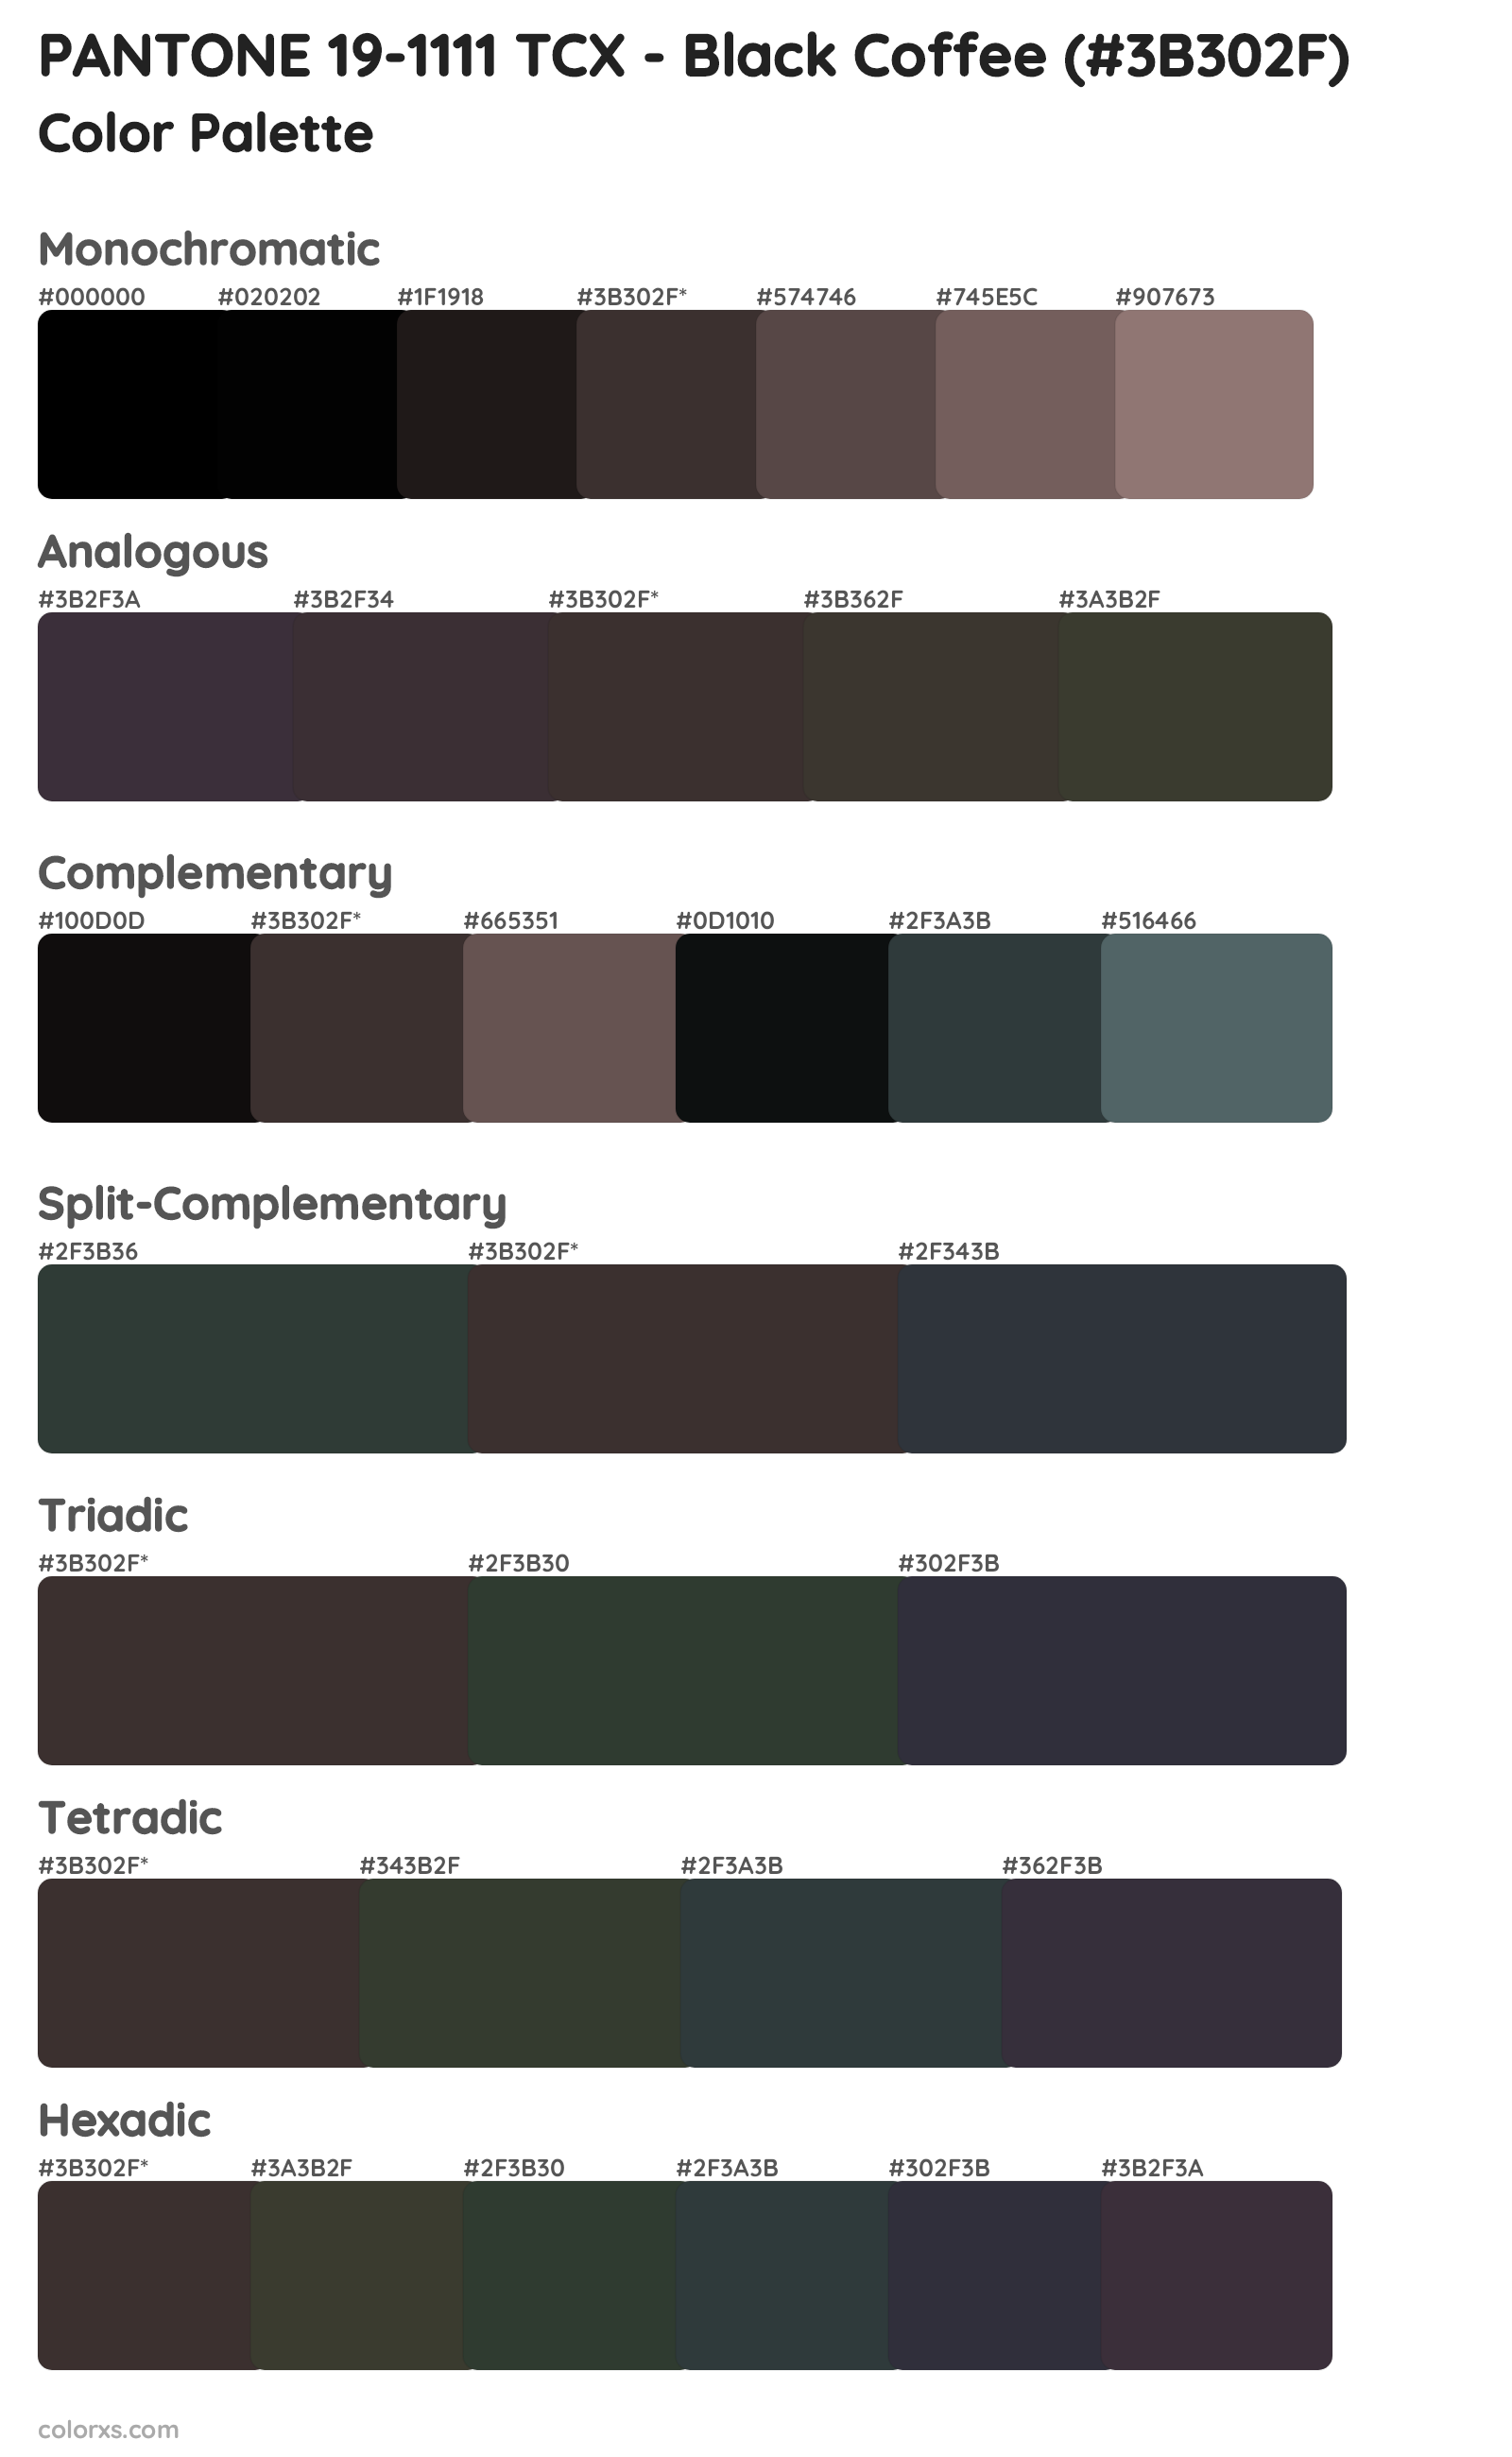 PANTONE 19-1111 TCX - Black Coffee Color Scheme Palettes